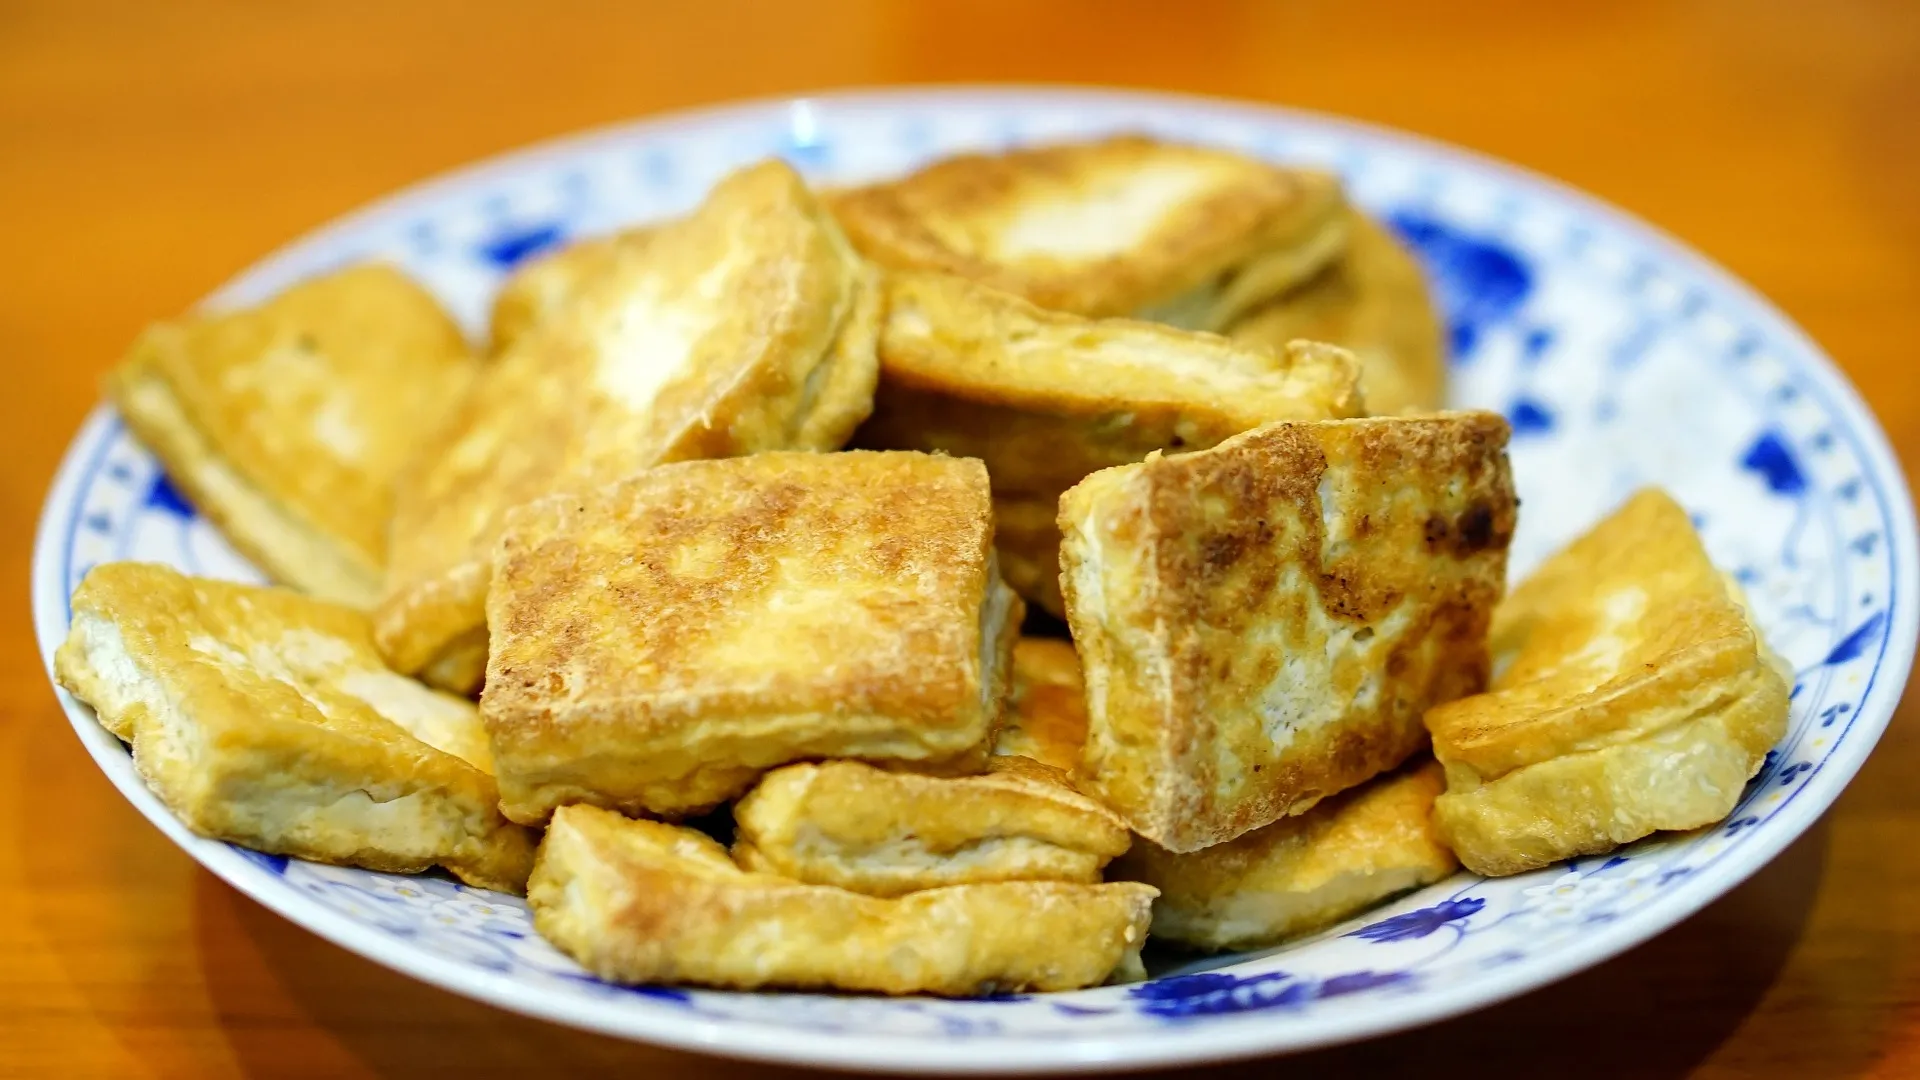 Mangiare tofu tutti i giorni fa veramente bene? Ecco la verità 